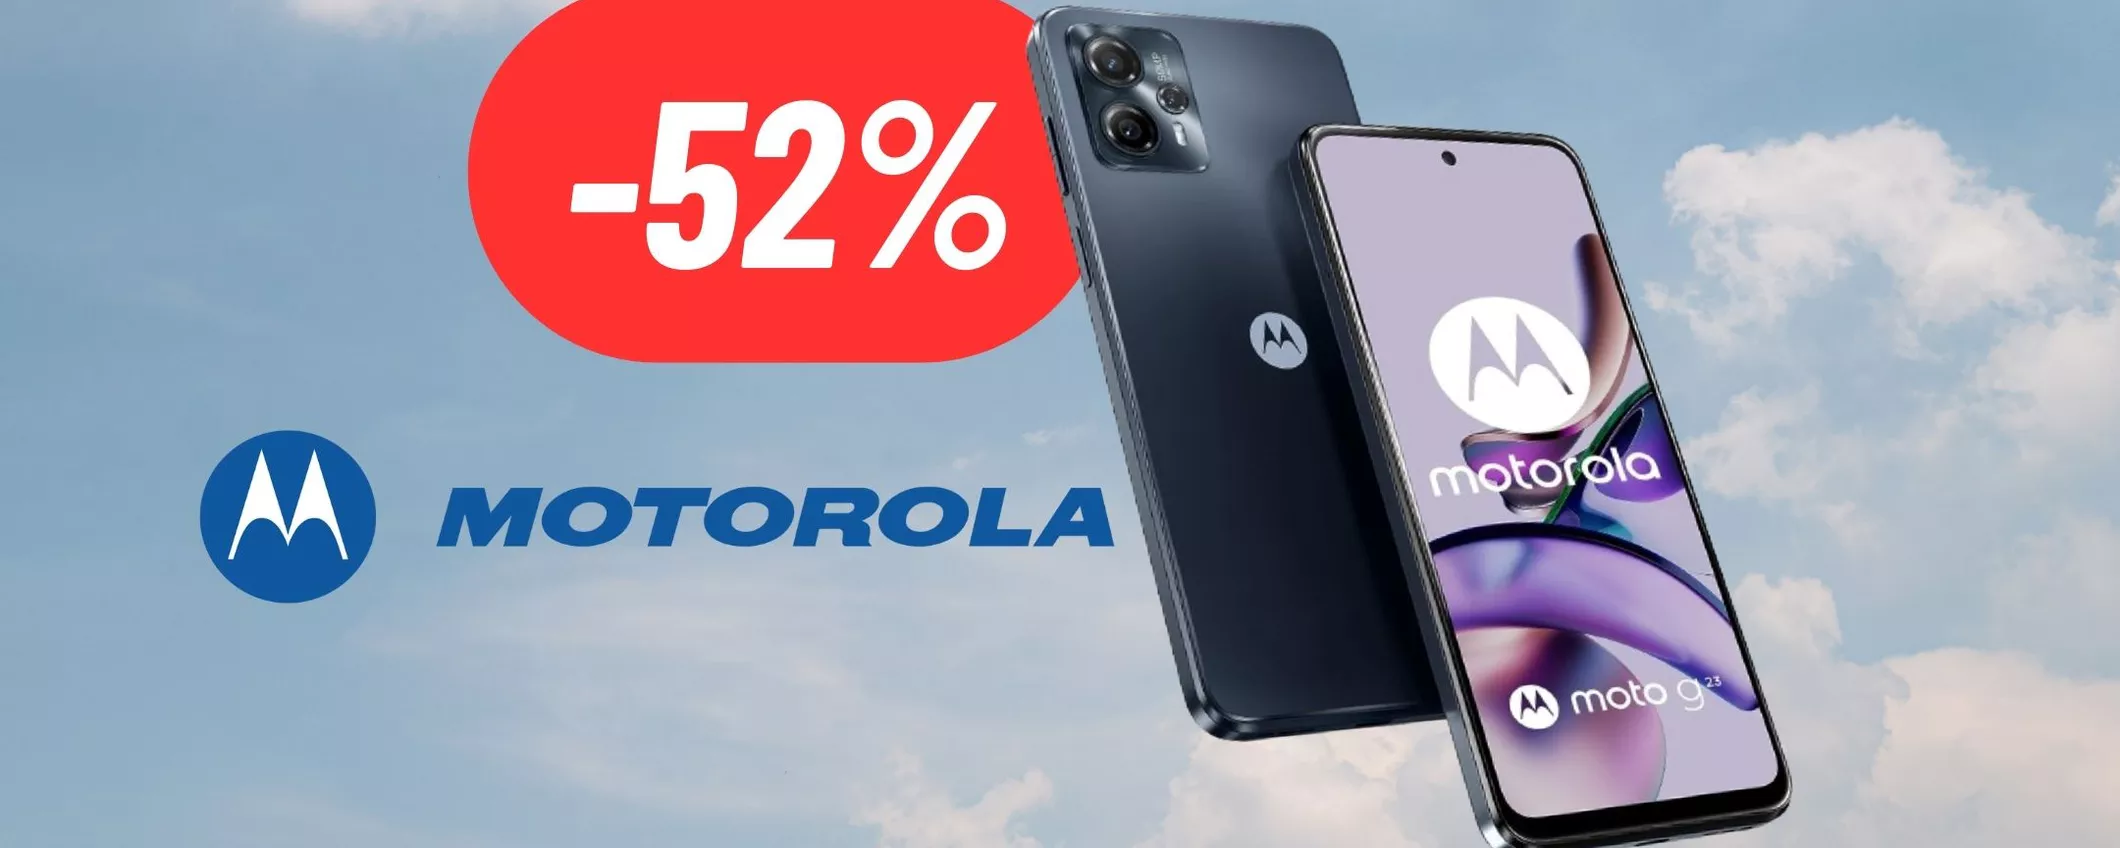 Motorola G23: 52% di sconto su Amazon; prezzo BASSISSIMO